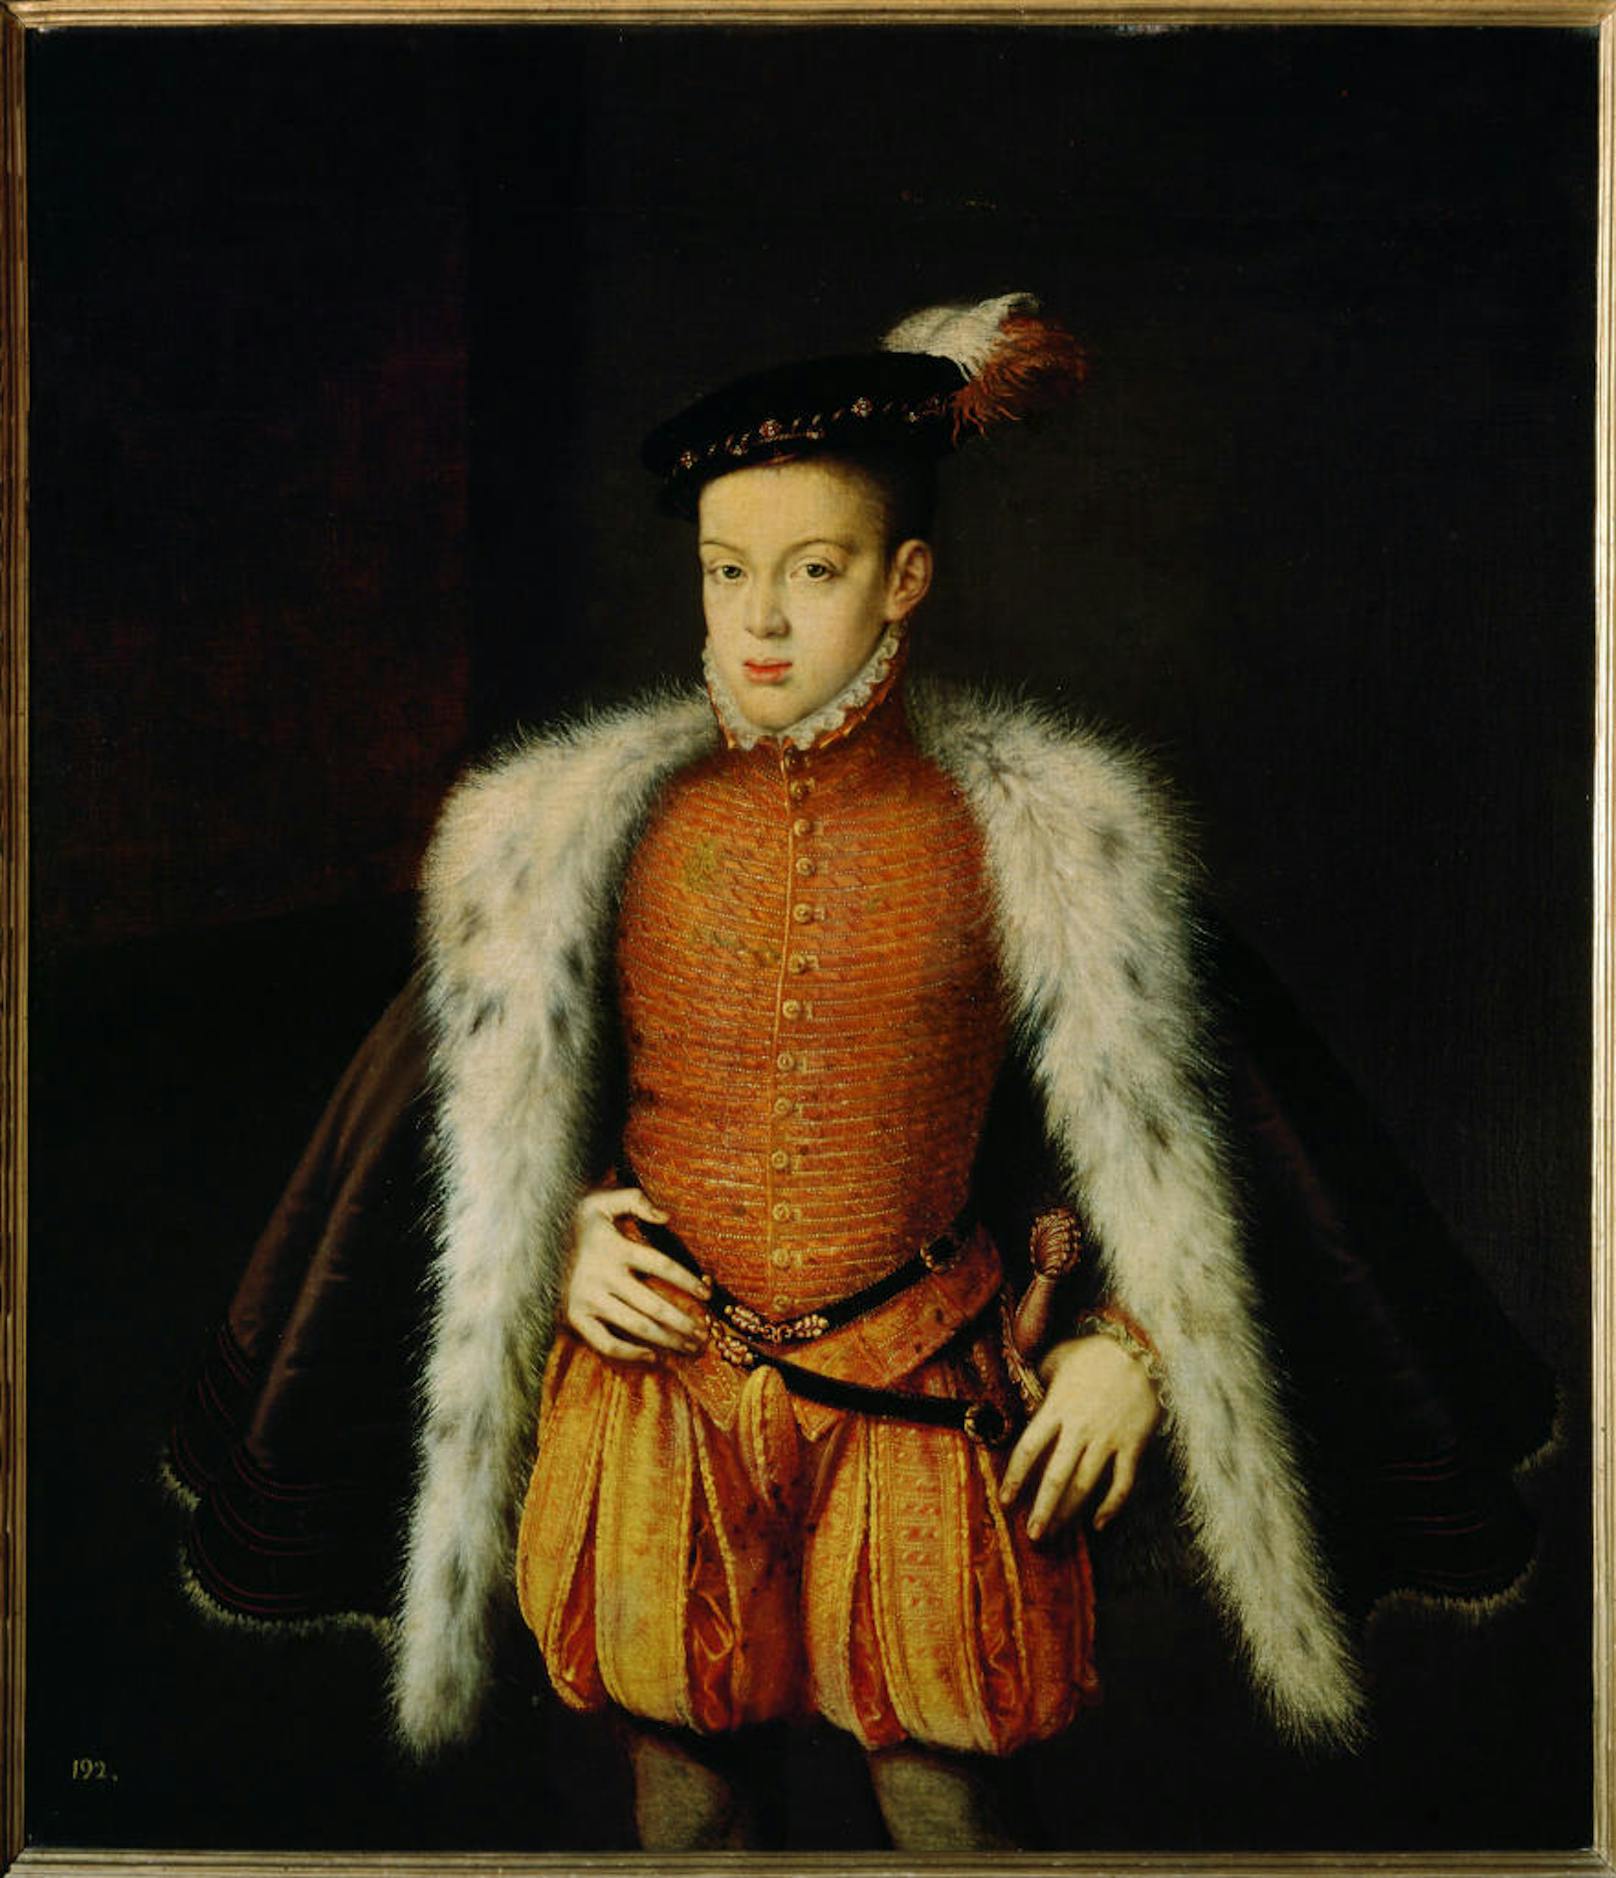 Der spanische Infant (Thronfolger) Don Carlos (1545 - 1568), Sohn von Philipp II. und Manuela von Portugal. Auch er zeigte deutlich das "Habsburger Kinn".